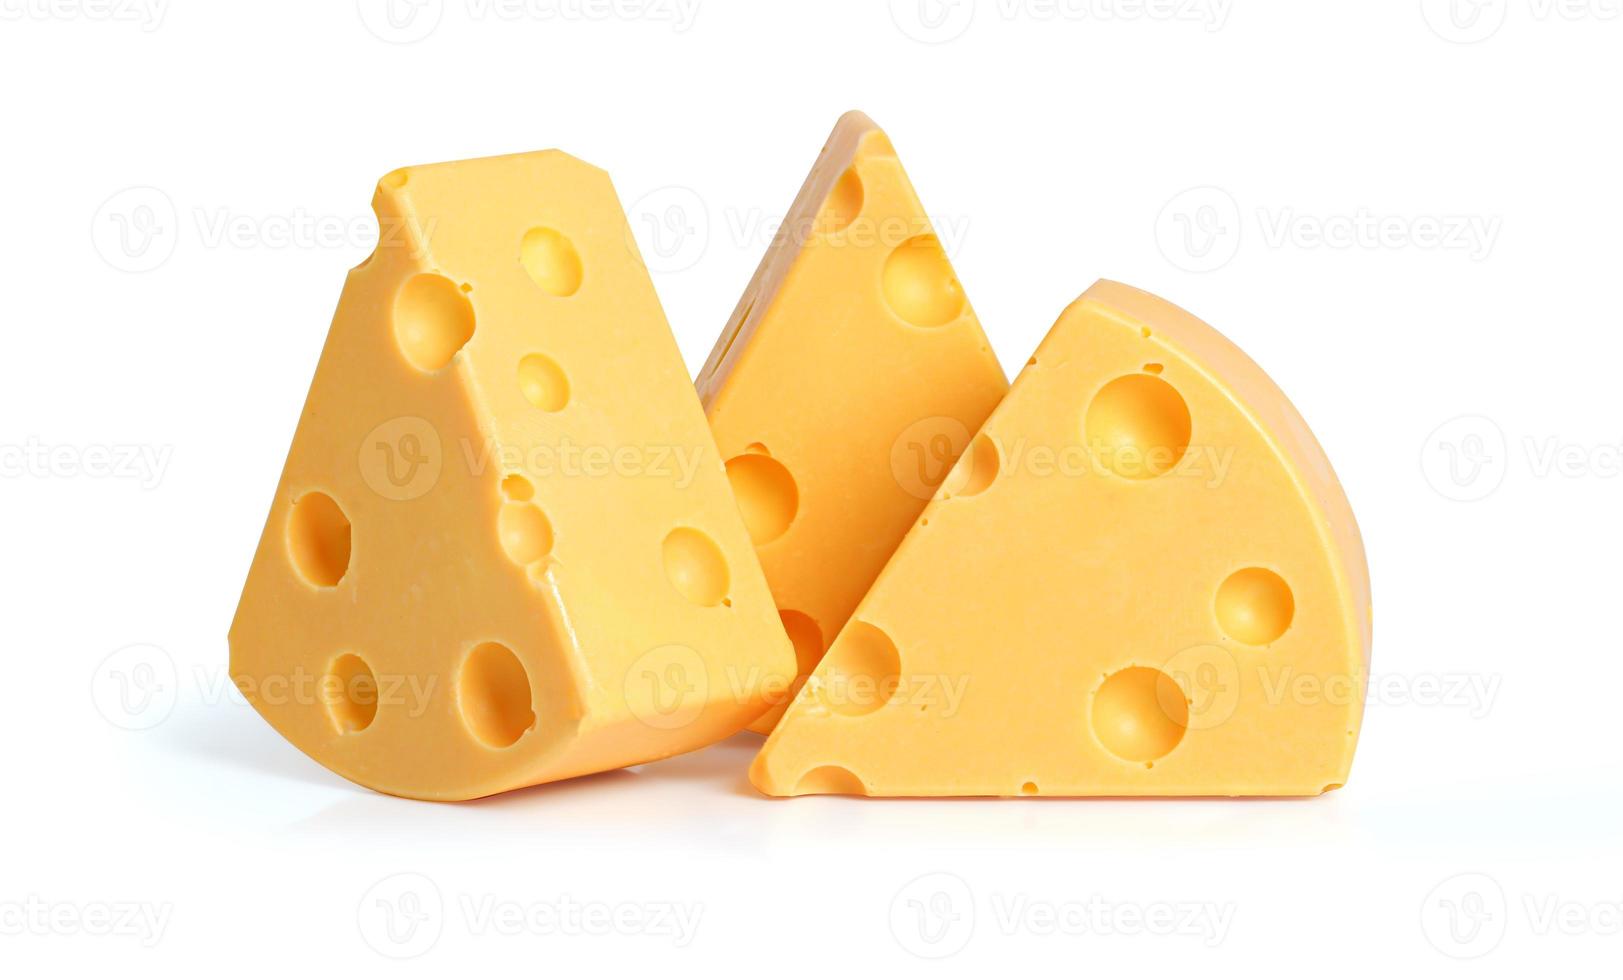 drie wiggen gele kaas met gaten op een witte achtergrond foto